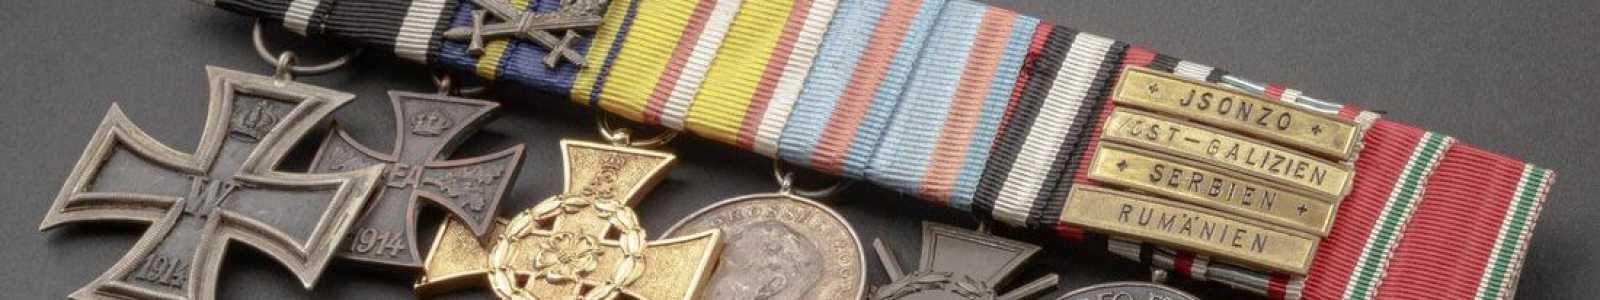 O82m - Международные медали и исторические коллекции